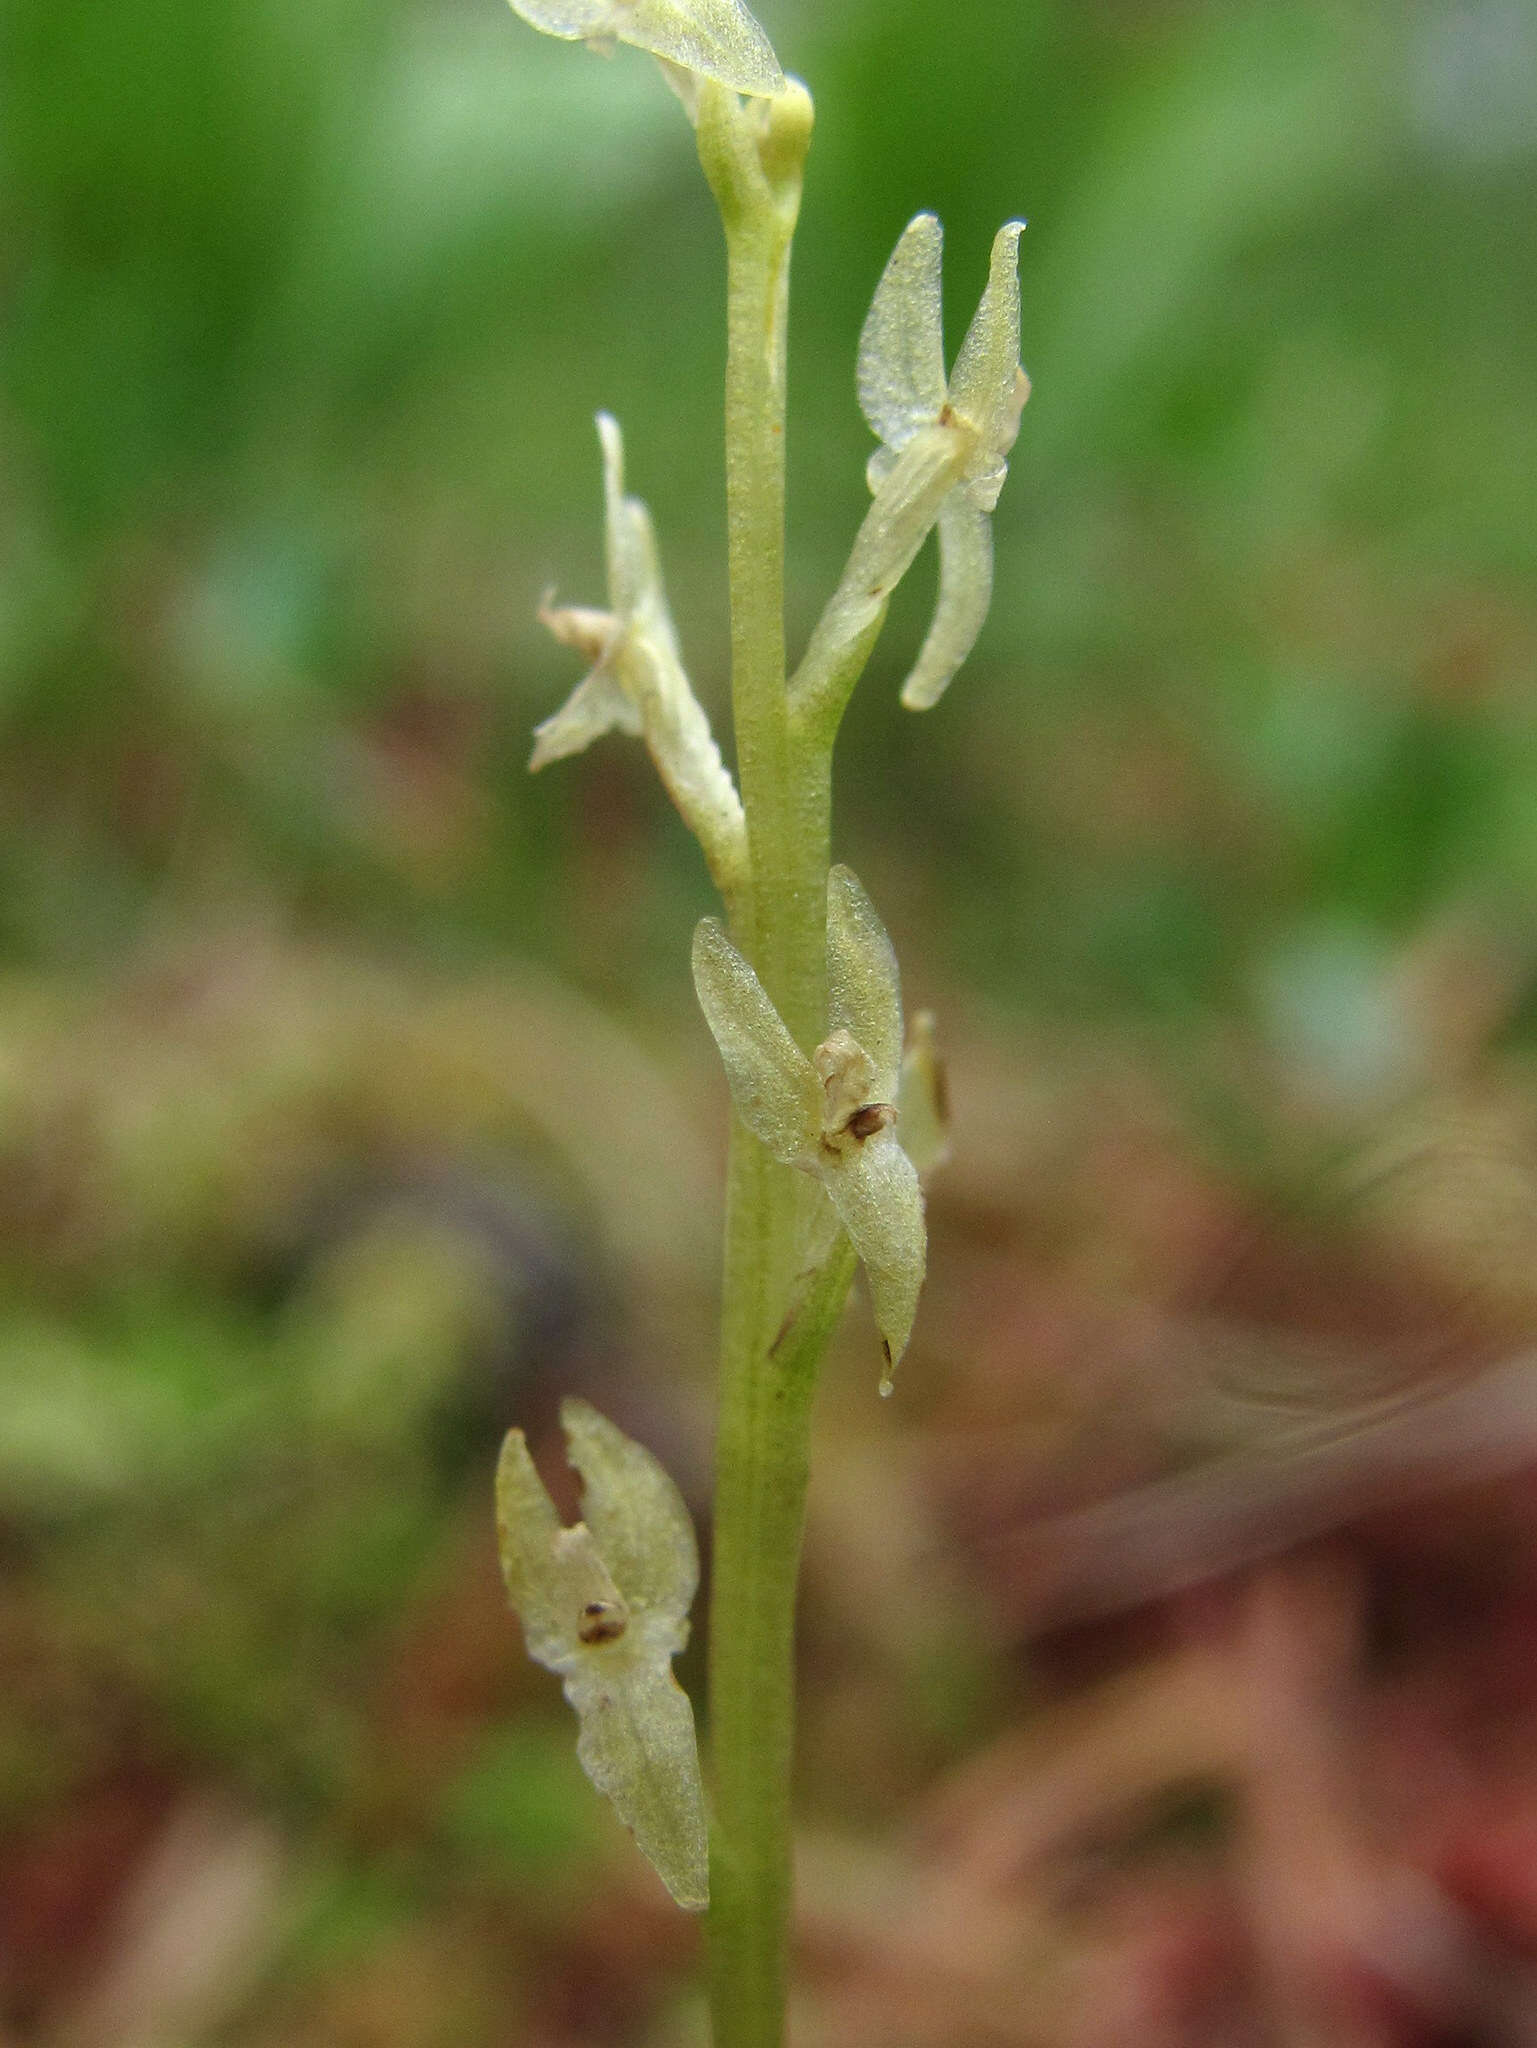 Image of Bog Orchid